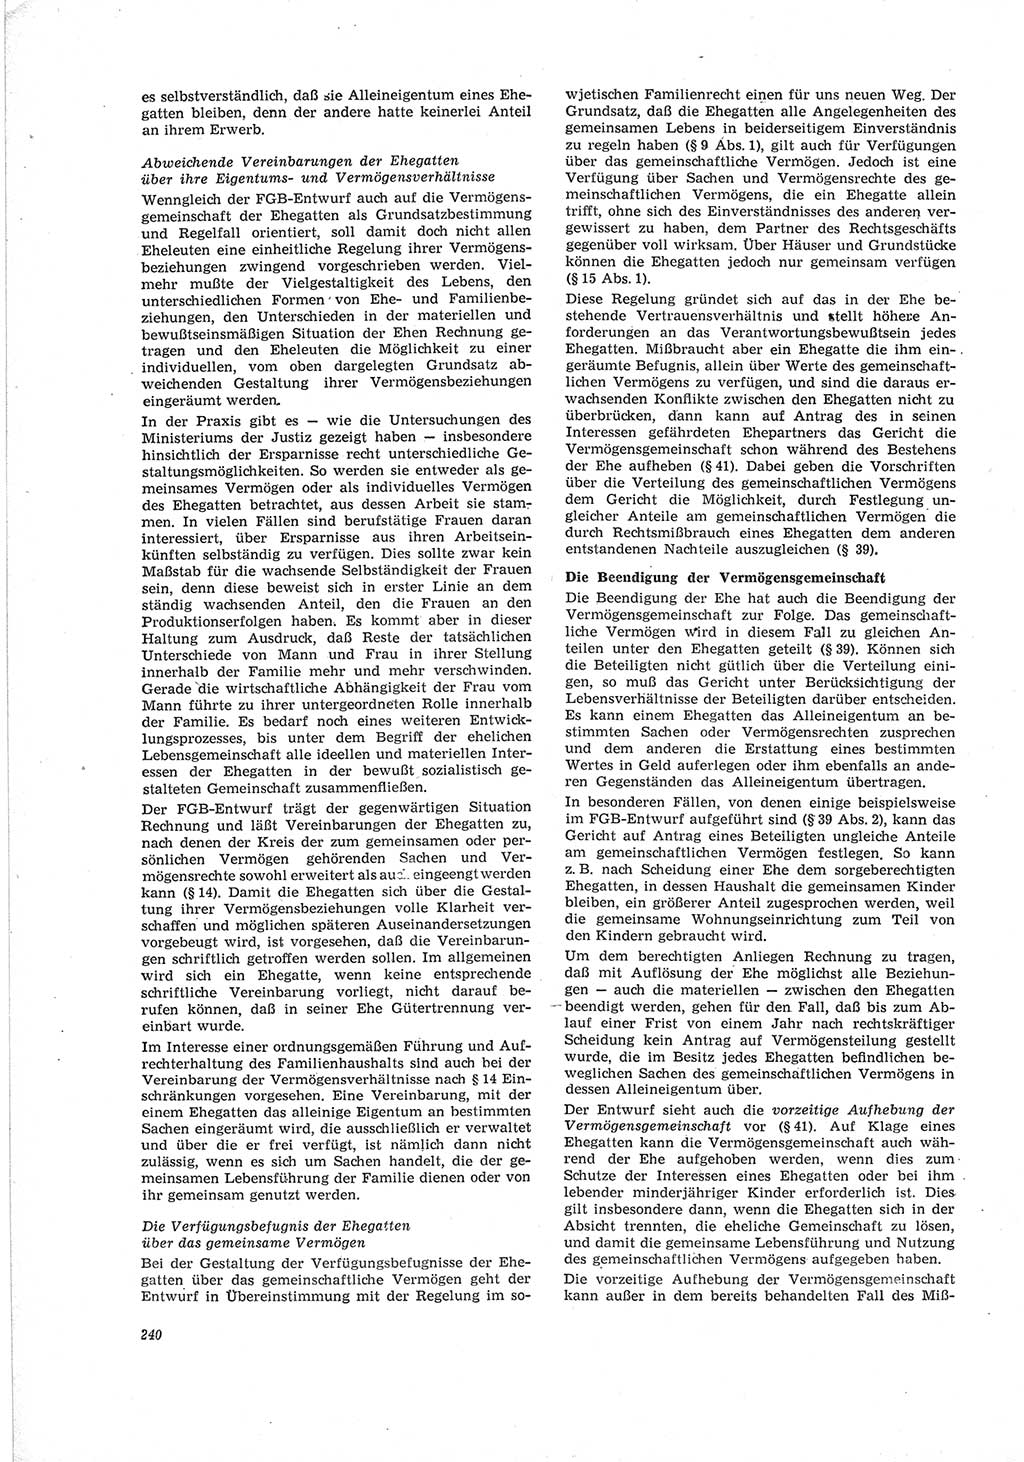 Neue Justiz (NJ), Zeitschrift für Recht und Rechtswissenschaft [Deutsche Demokratische Republik (DDR)], 19. Jahrgang 1965, Seite 240 (NJ DDR 1965, S. 240)